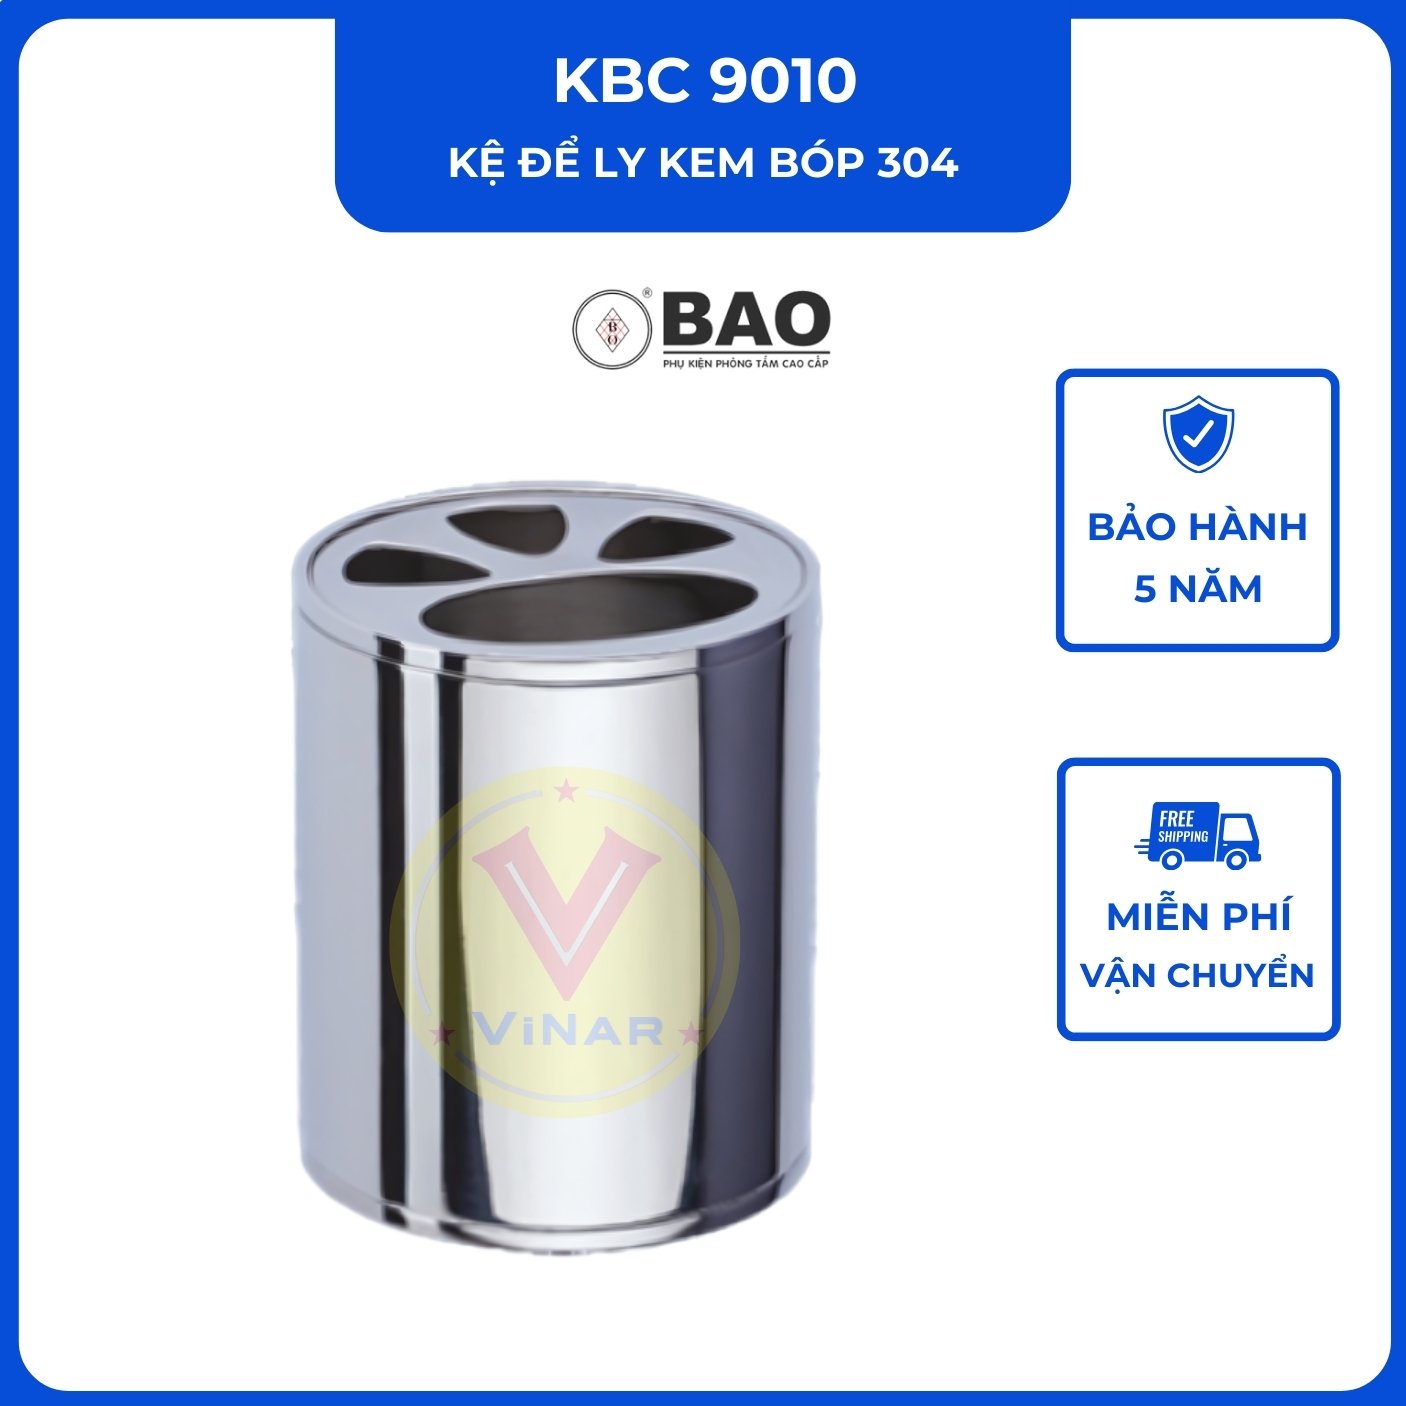 ke-ly-kem-bop-304-KBC9010